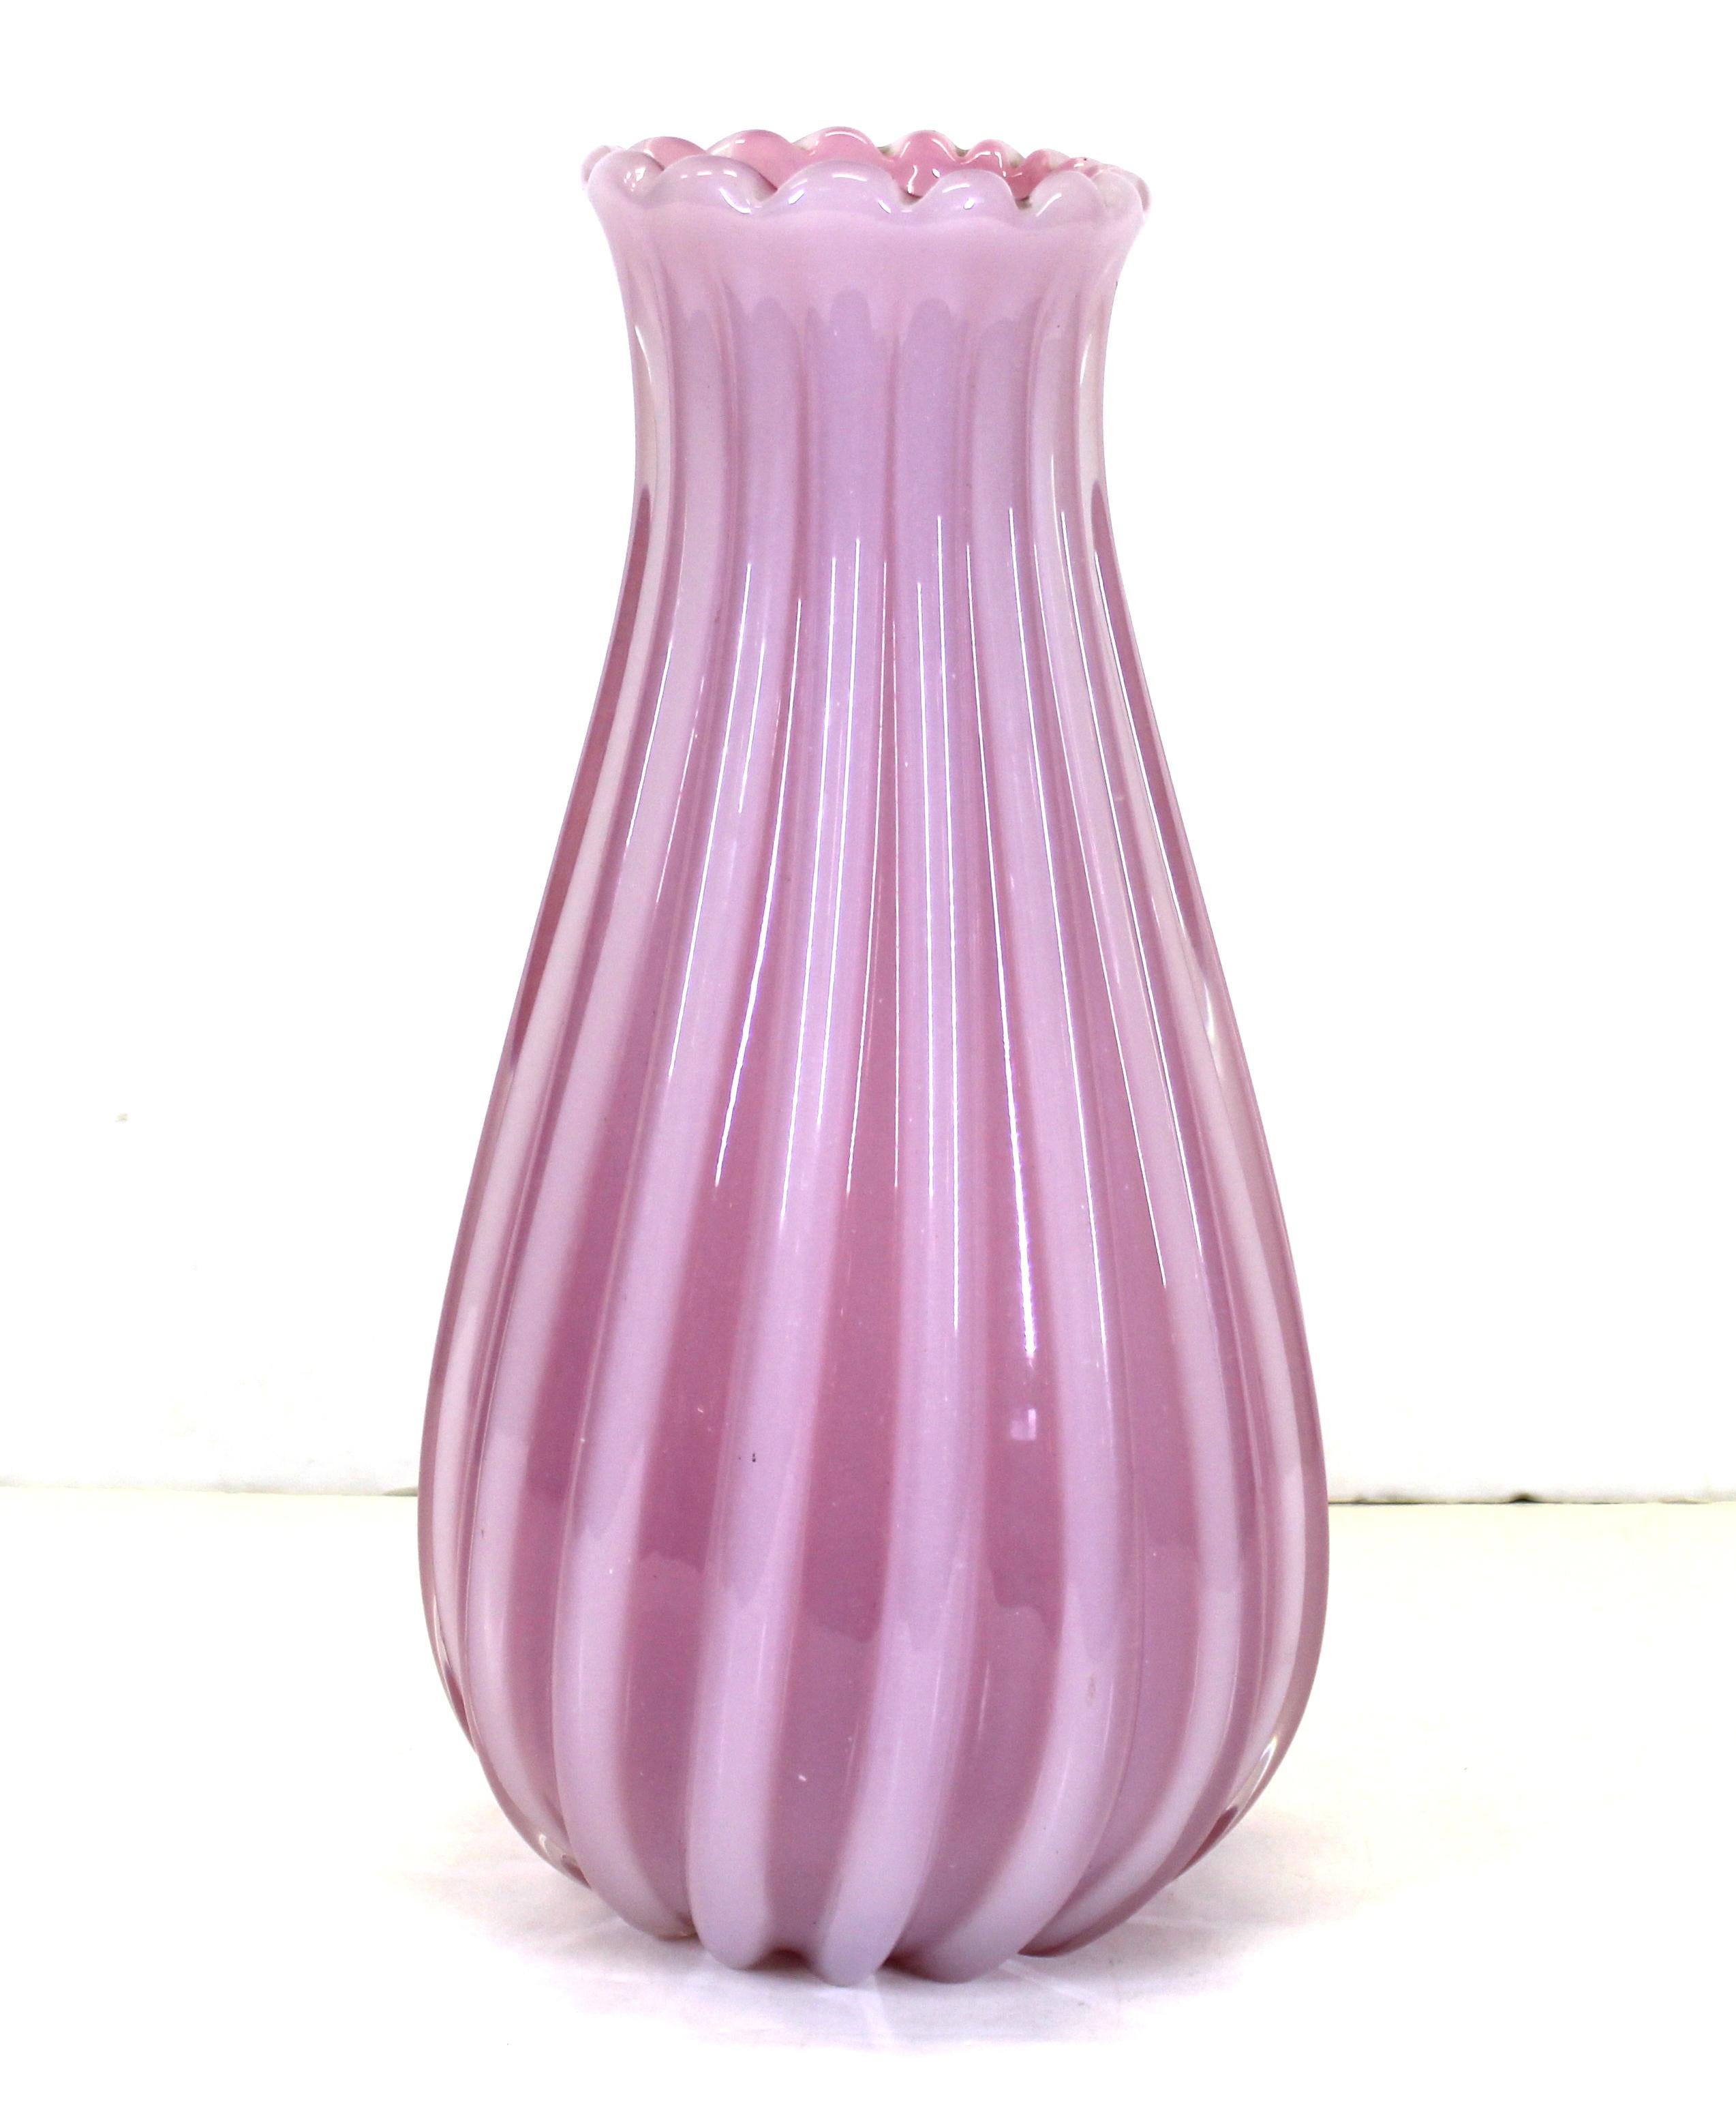 pink murano vase